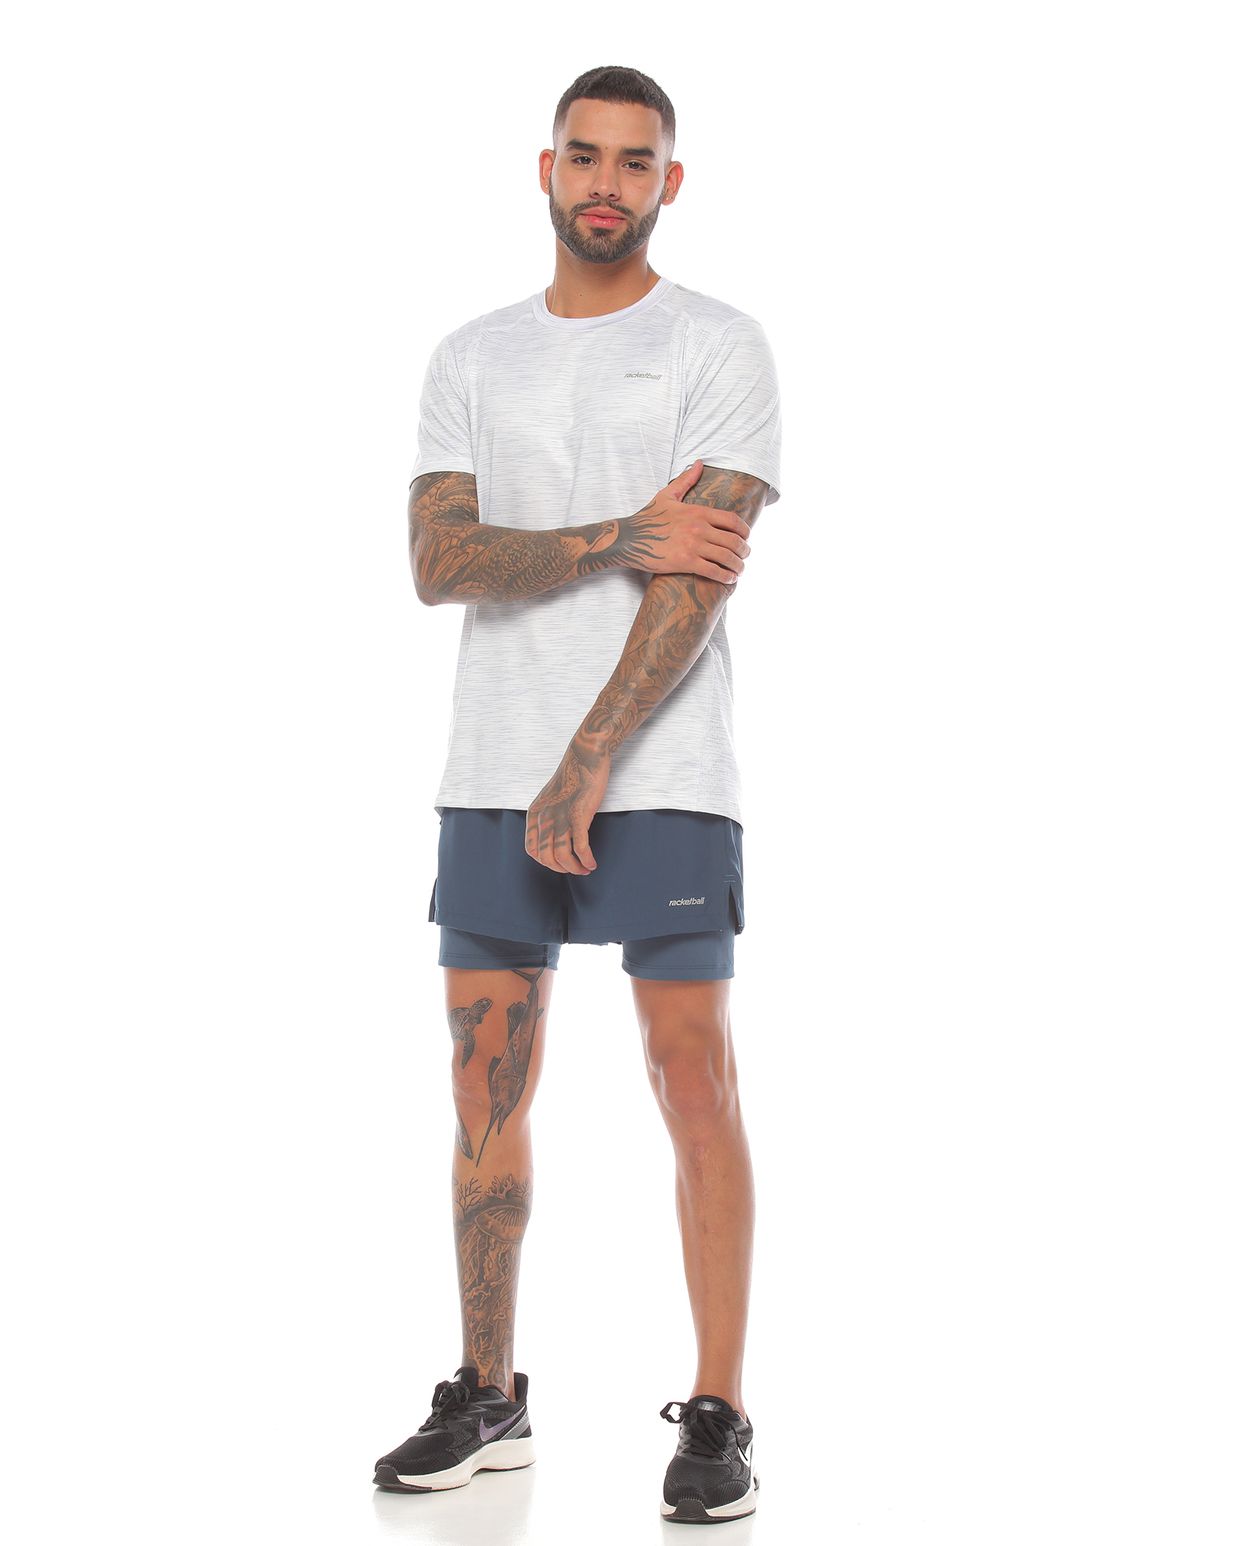 modelo con pantaloneta deportiva color petróleo y camiseta deportiva manga corta blanca para hombre cuerpo completo